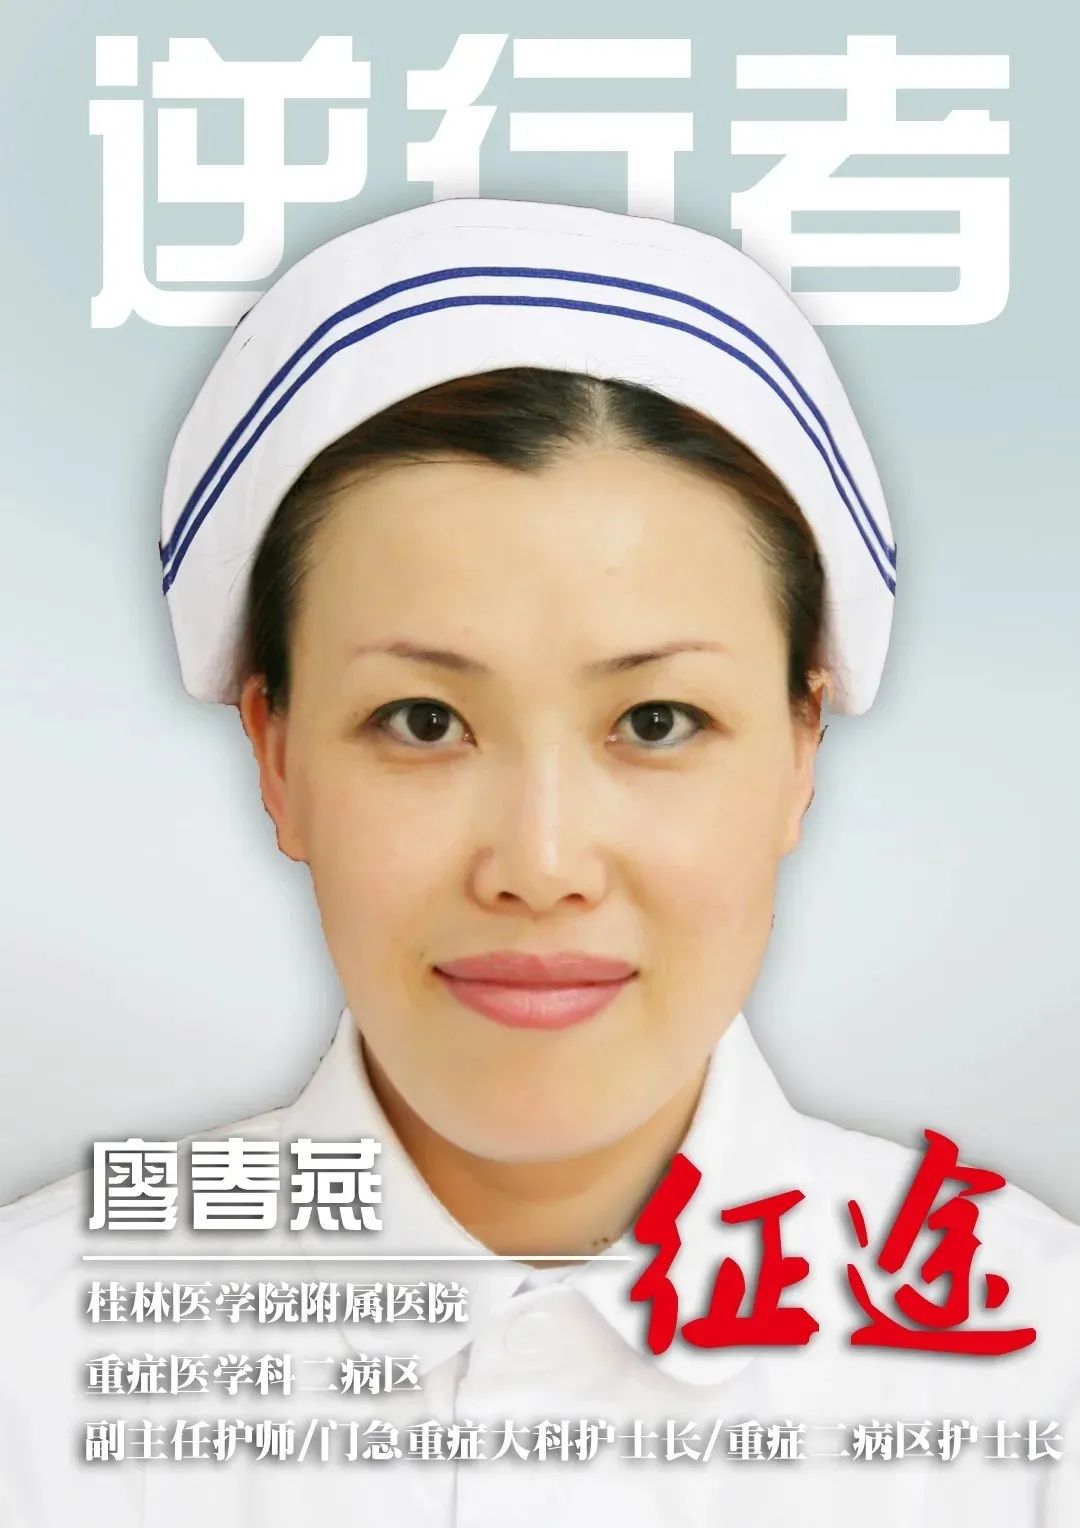 桂林医学院附属医院优秀党务工作者廖春燕 ： 「女汉子」、「拼命三郎」